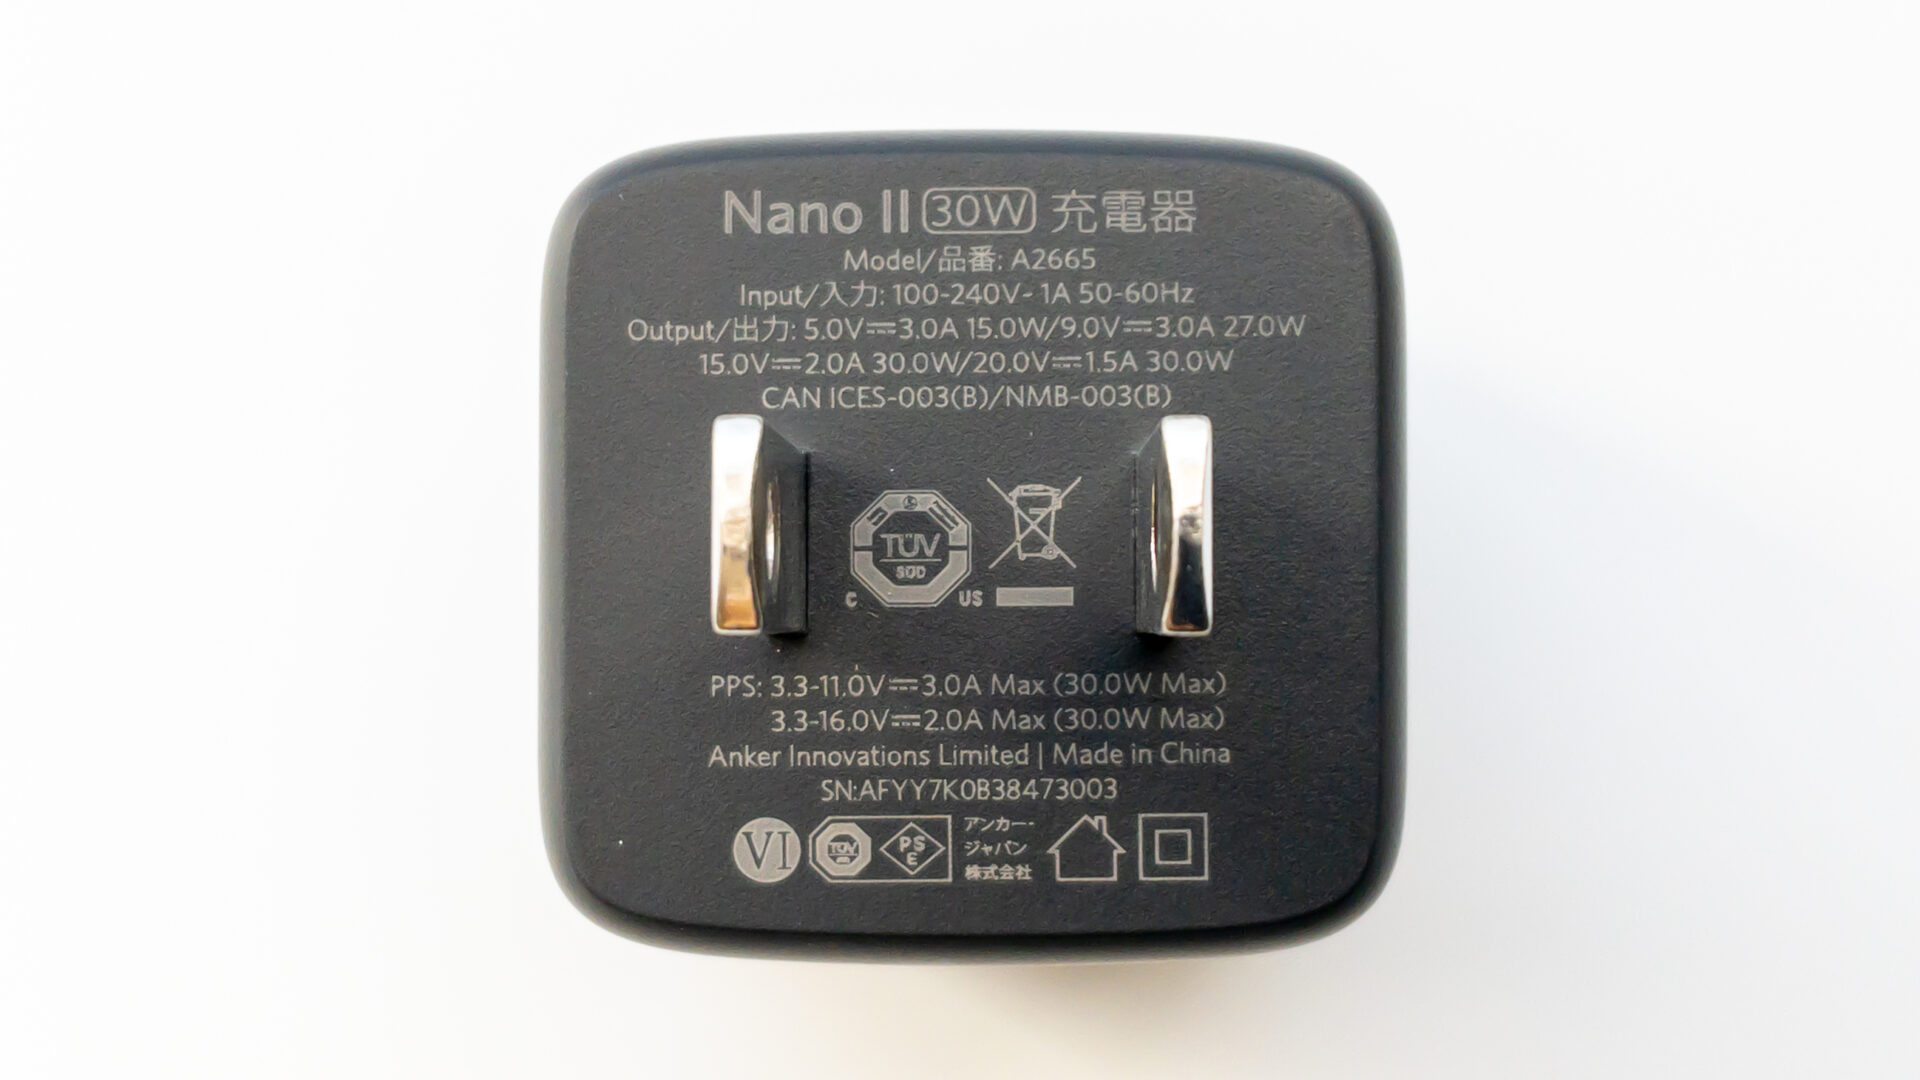 Anker Nano II 30W本体正面